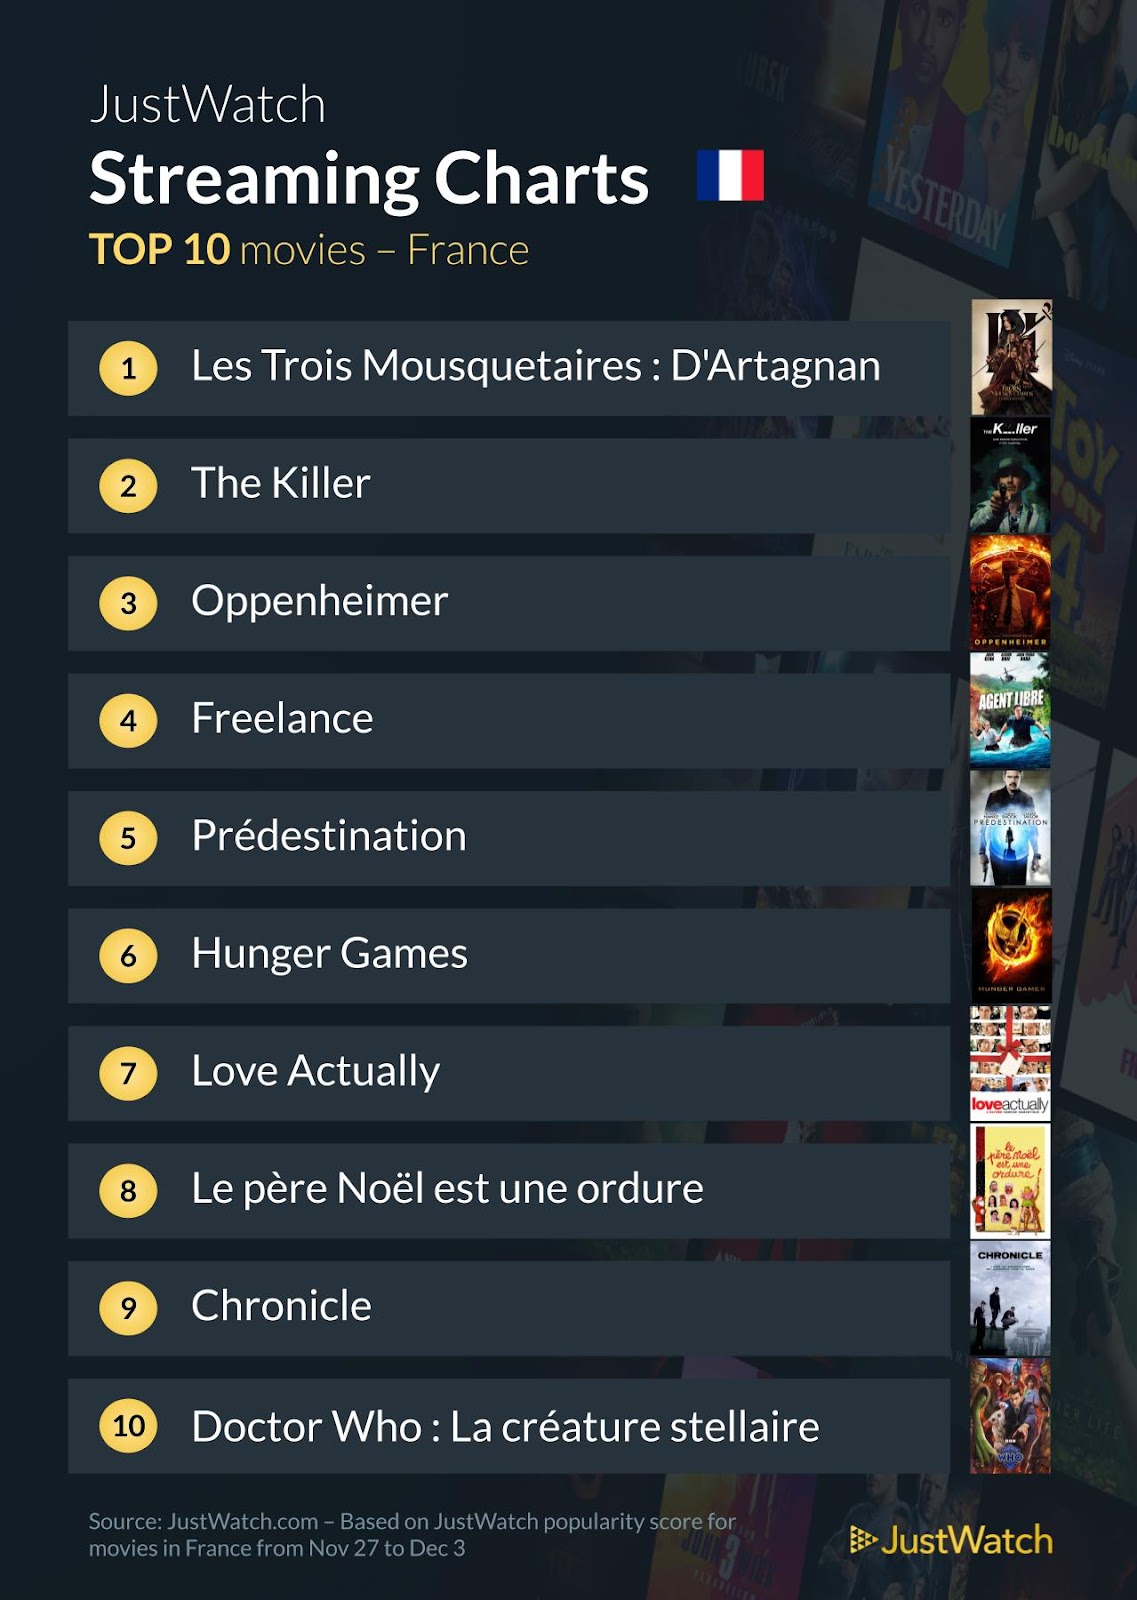 "The Walking Dead : Daryl Dixon", "Les trois mousquetaires : D'Artagnan", "Doctor Who" : Le top 10 des films et séries les plus populaires de la semaine